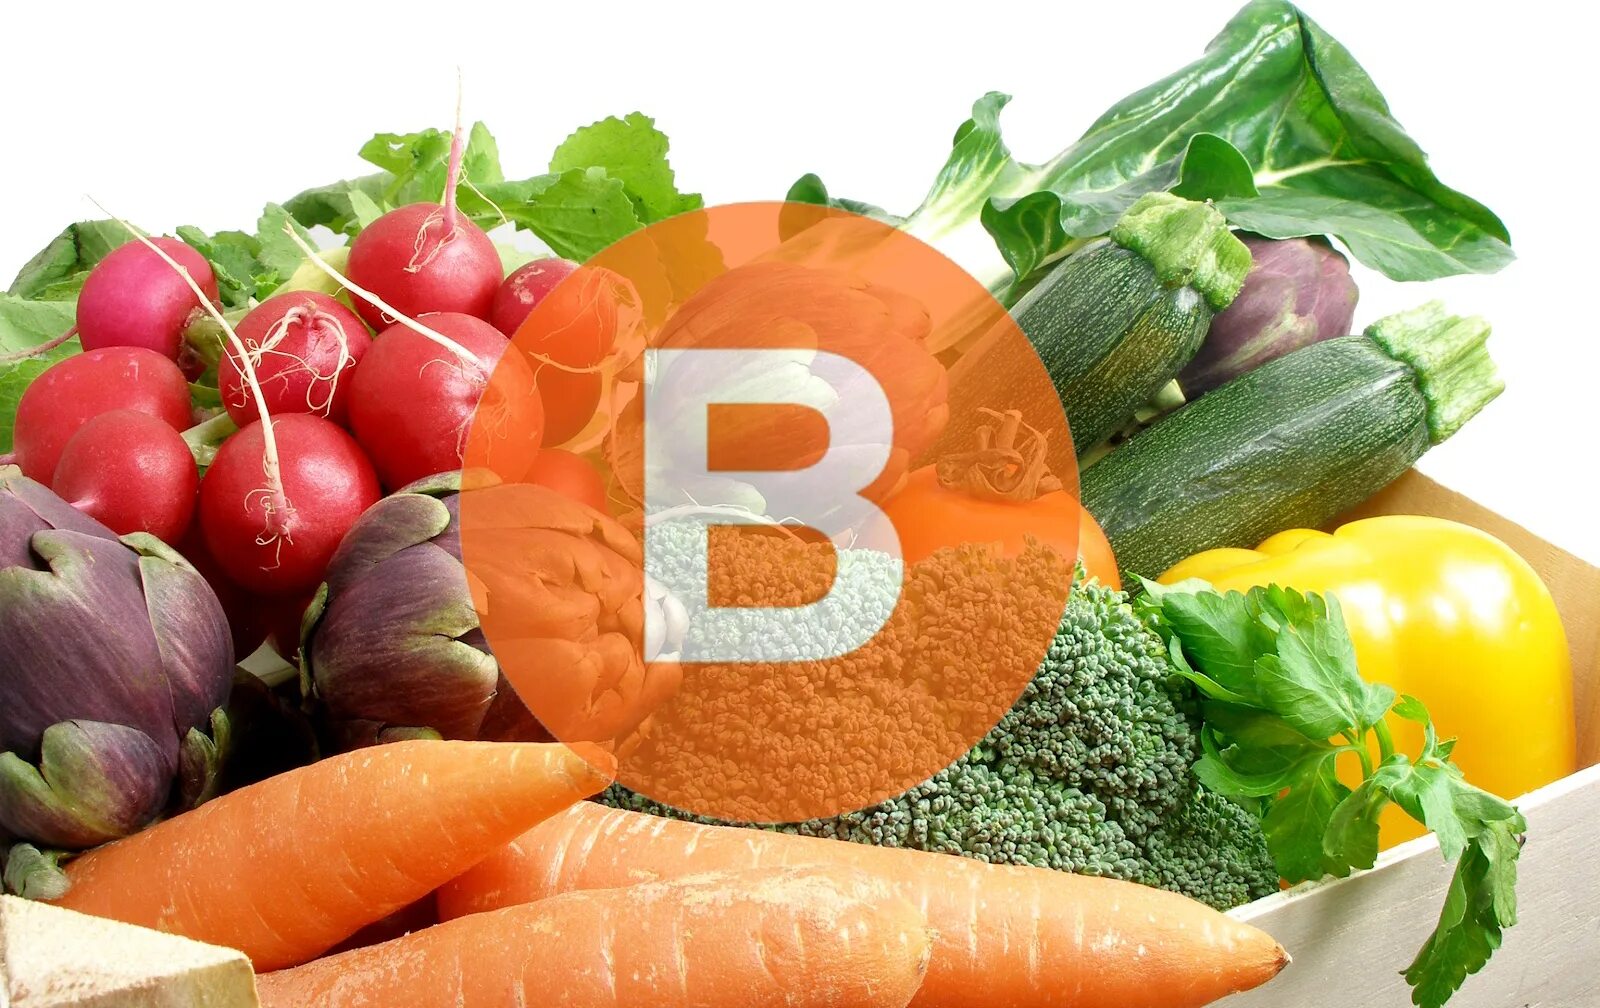 Овощи витамин b. Что такое витамины. Витамины группы в. Витамины группы в в овощах и фруктах. Витамины группы б в овощах.